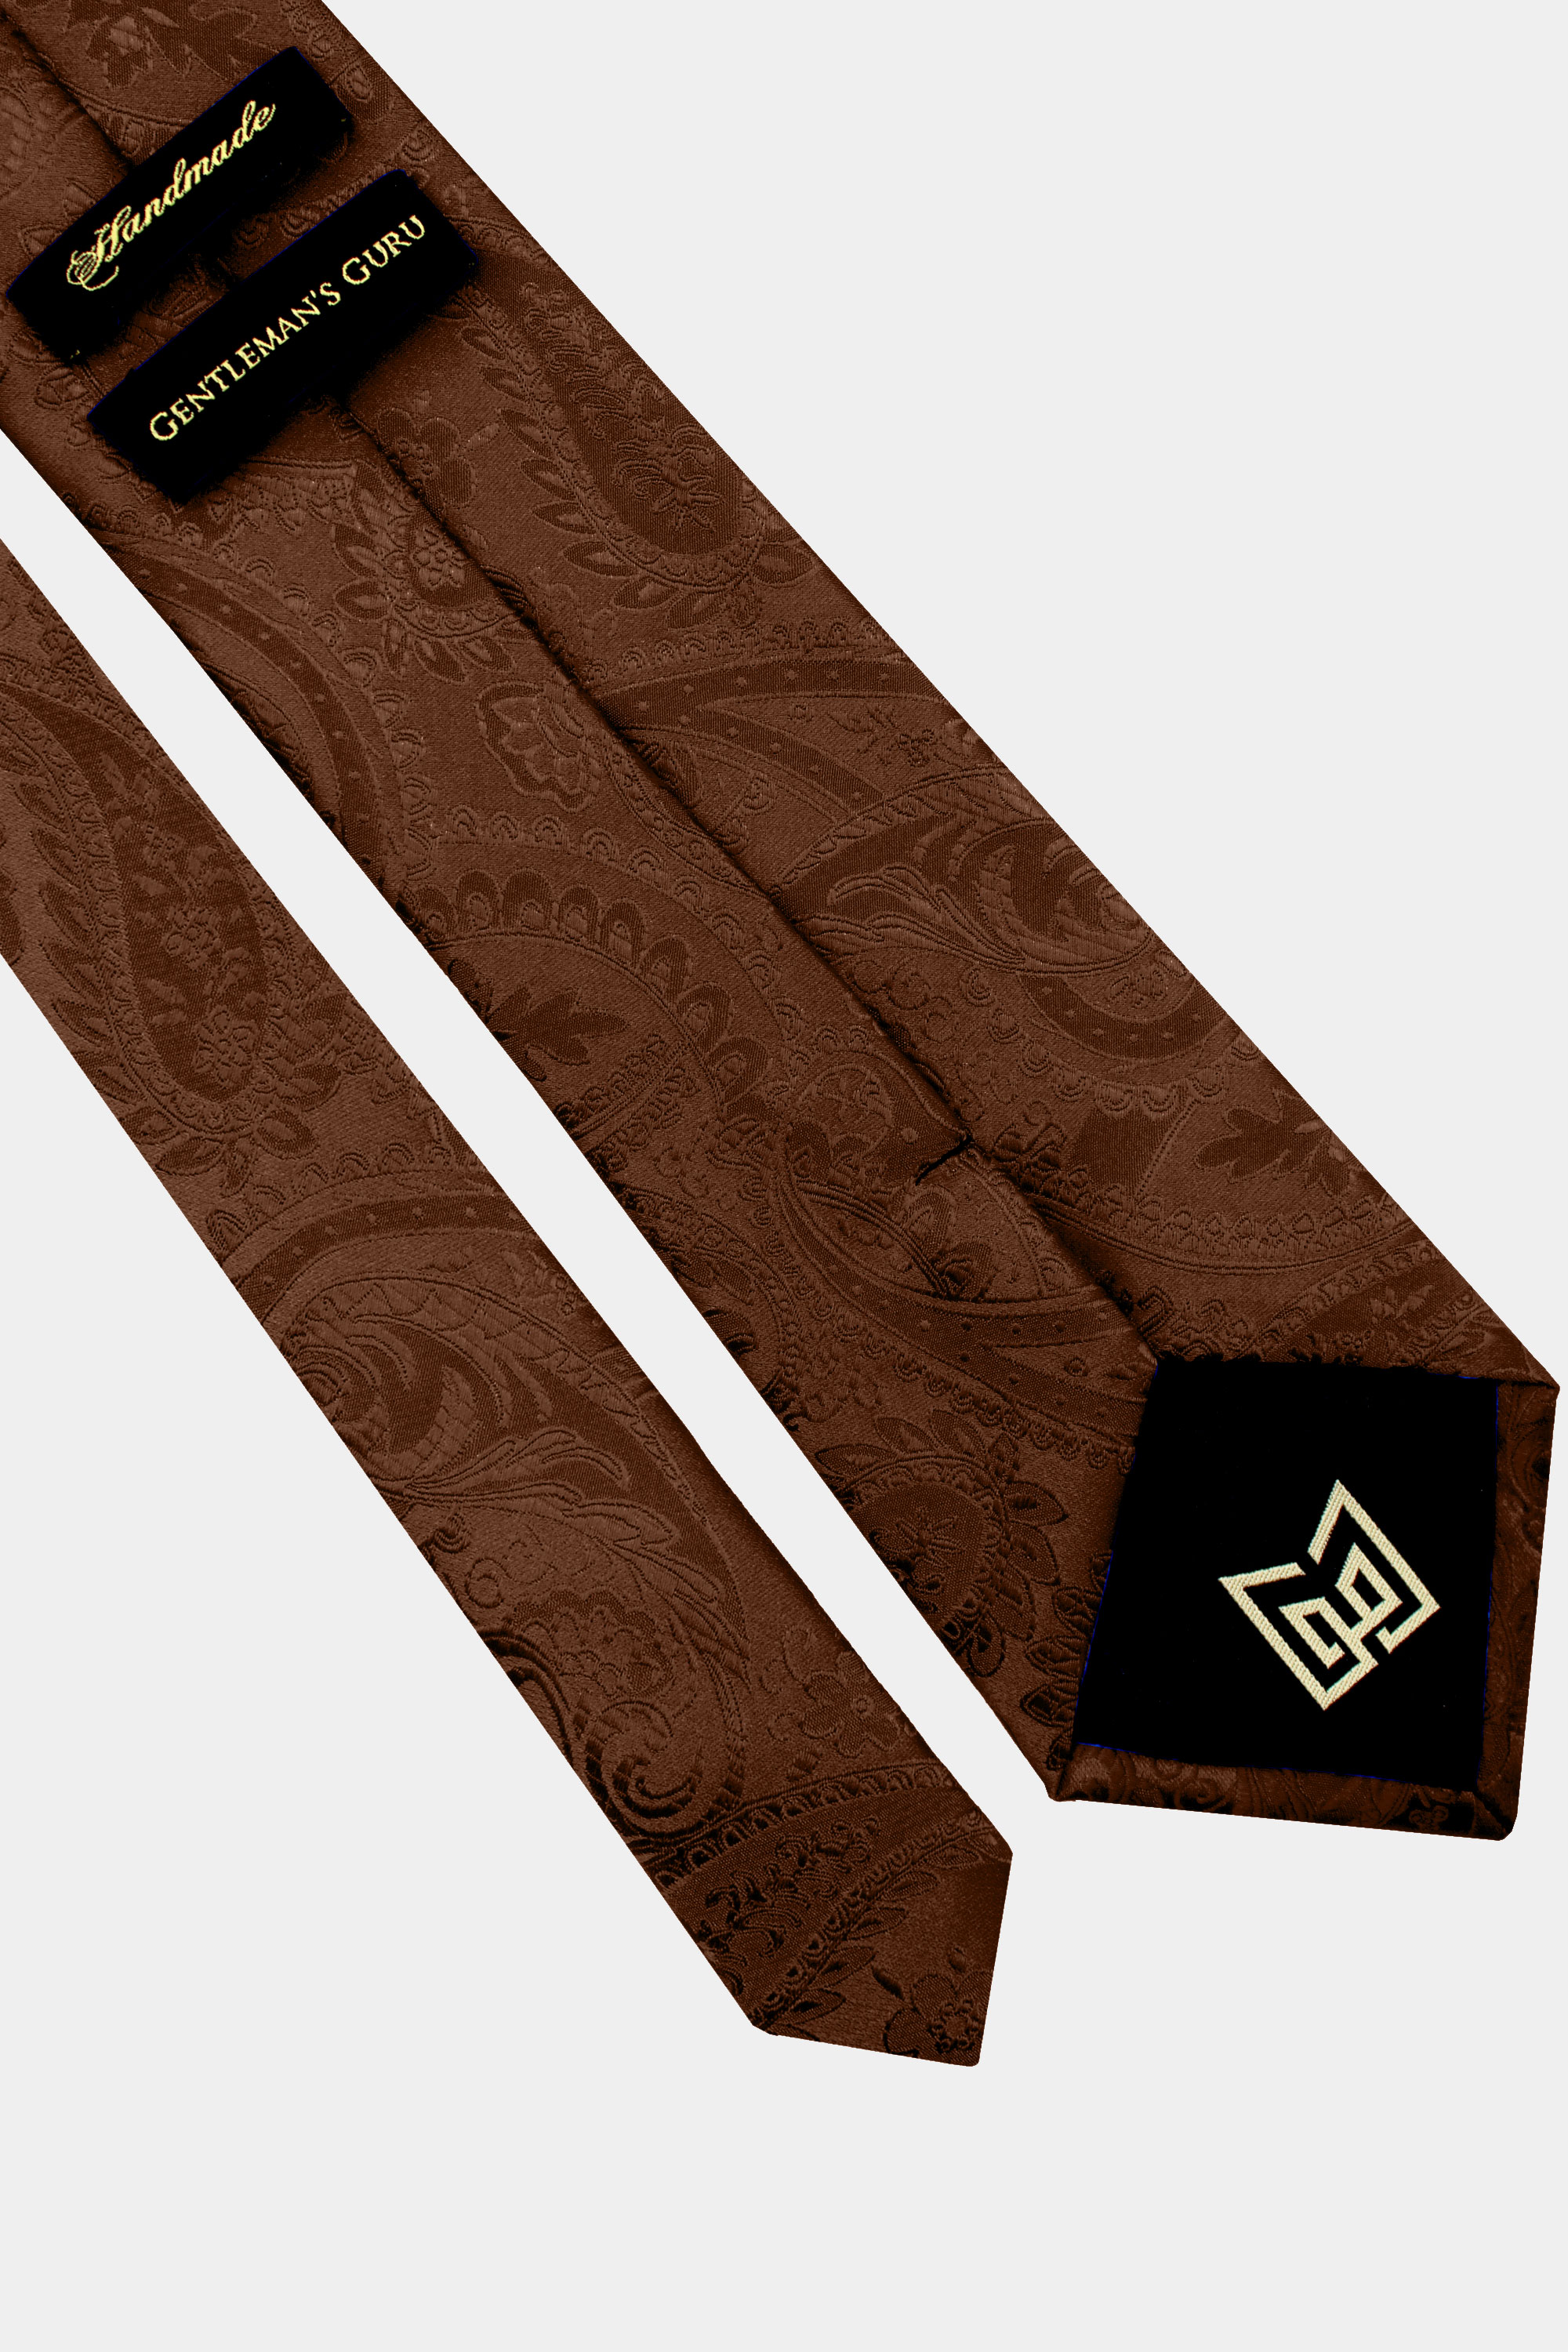 Brown-Paisley-Tie-from-Gentlemansguru.com